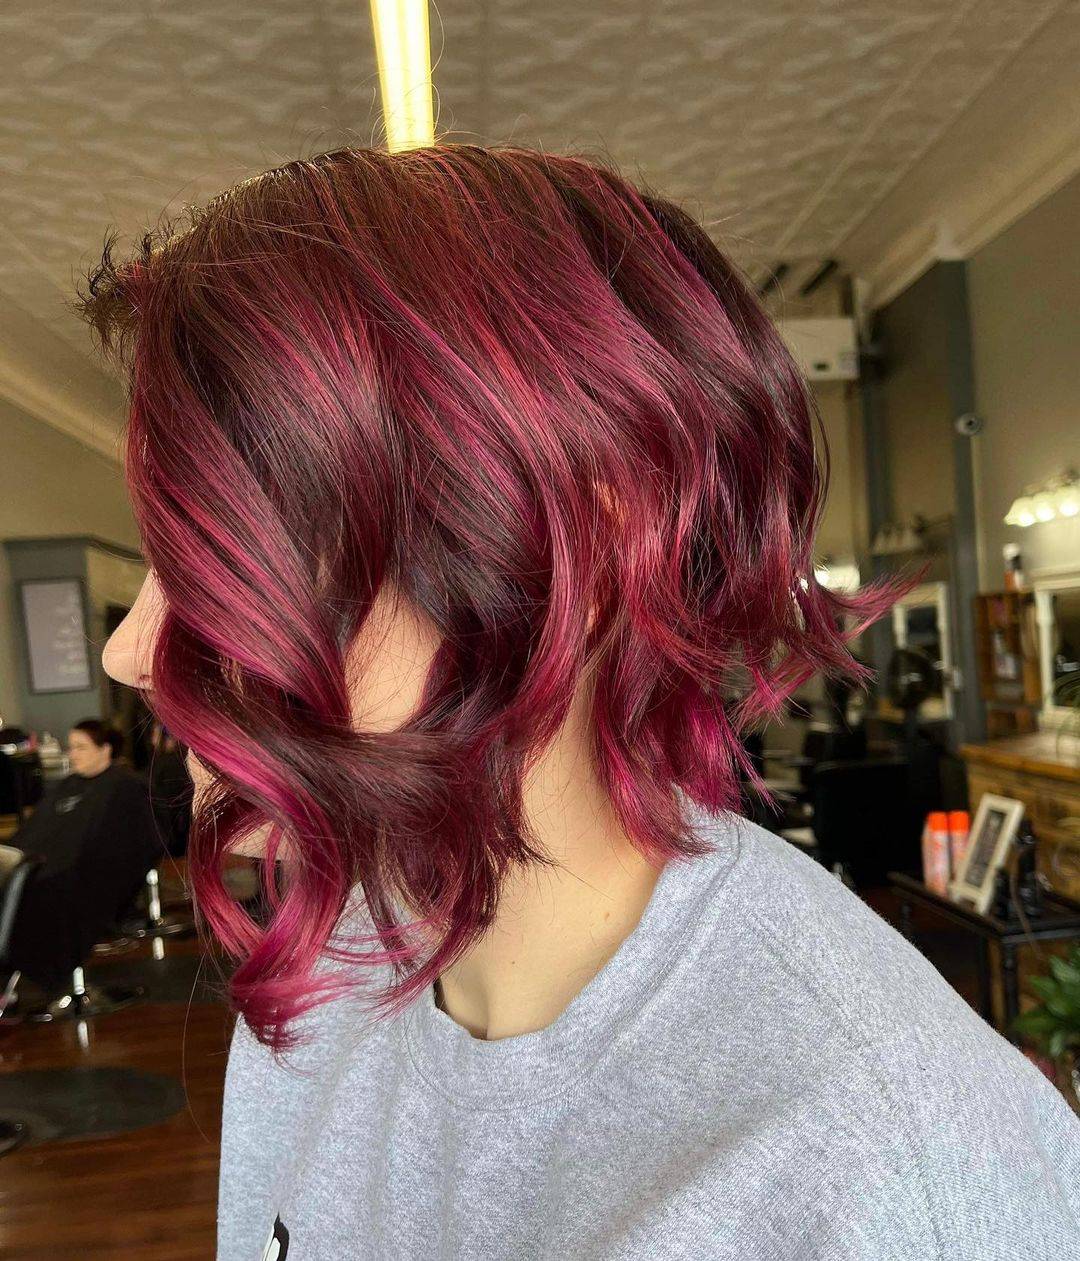 Burgundy hair color 456 burgundy hair color | burgundy hair color for women | burgundy hair color highlights Burgundy Hair Color